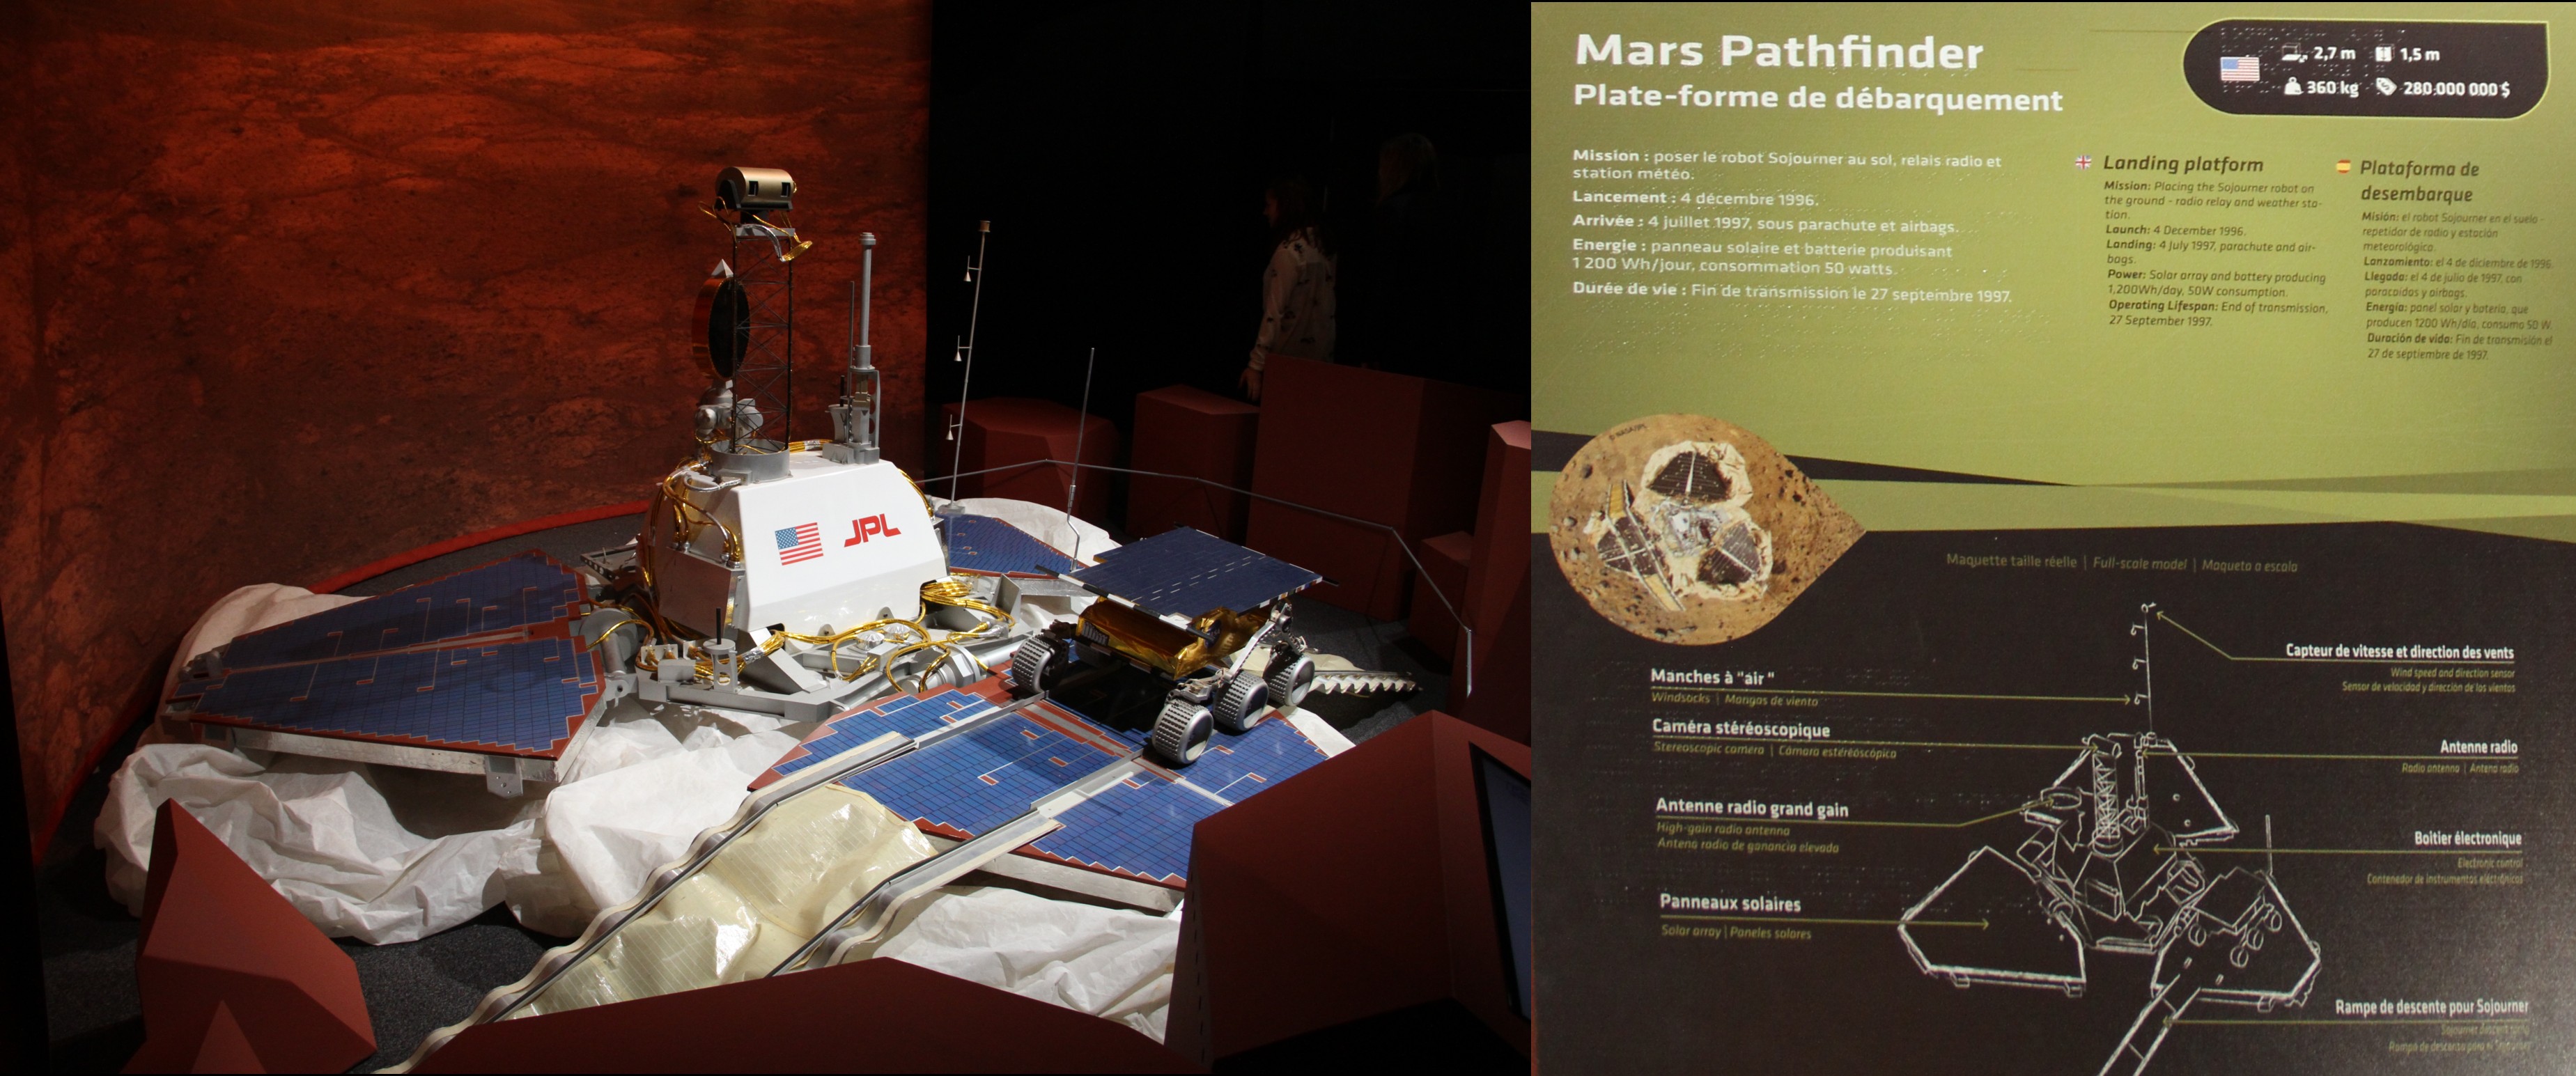 16 02 18 - 15h 47m 26s - Explorez Mars Palais de la Découverte montage